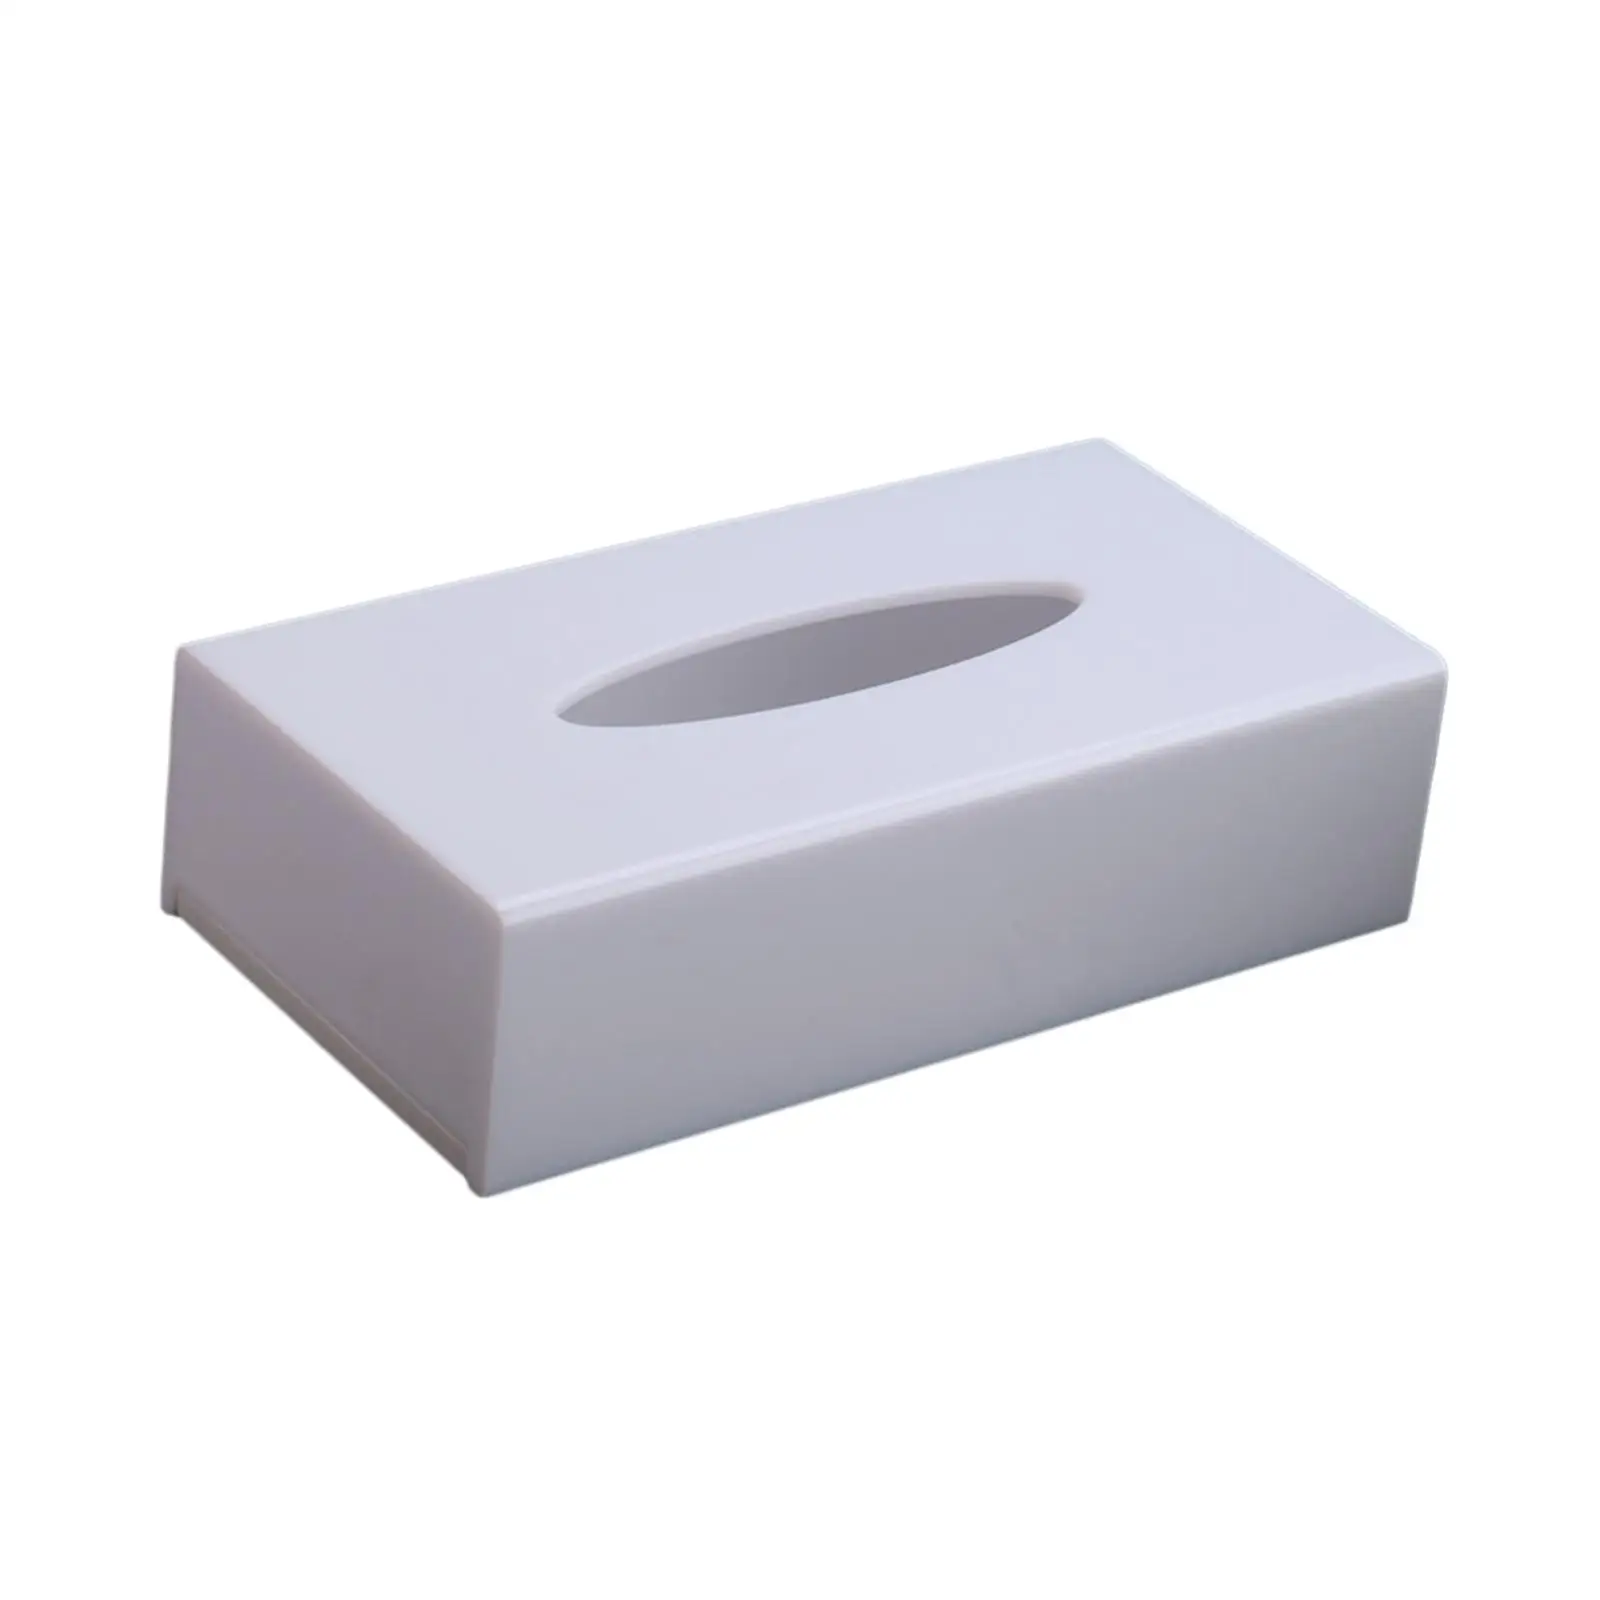 Bathroom Toilet Paper Holder Acrylic Toilet Paper Rack Tissue Case Napkin Organizer for Restaurant Hotel Office Toilet